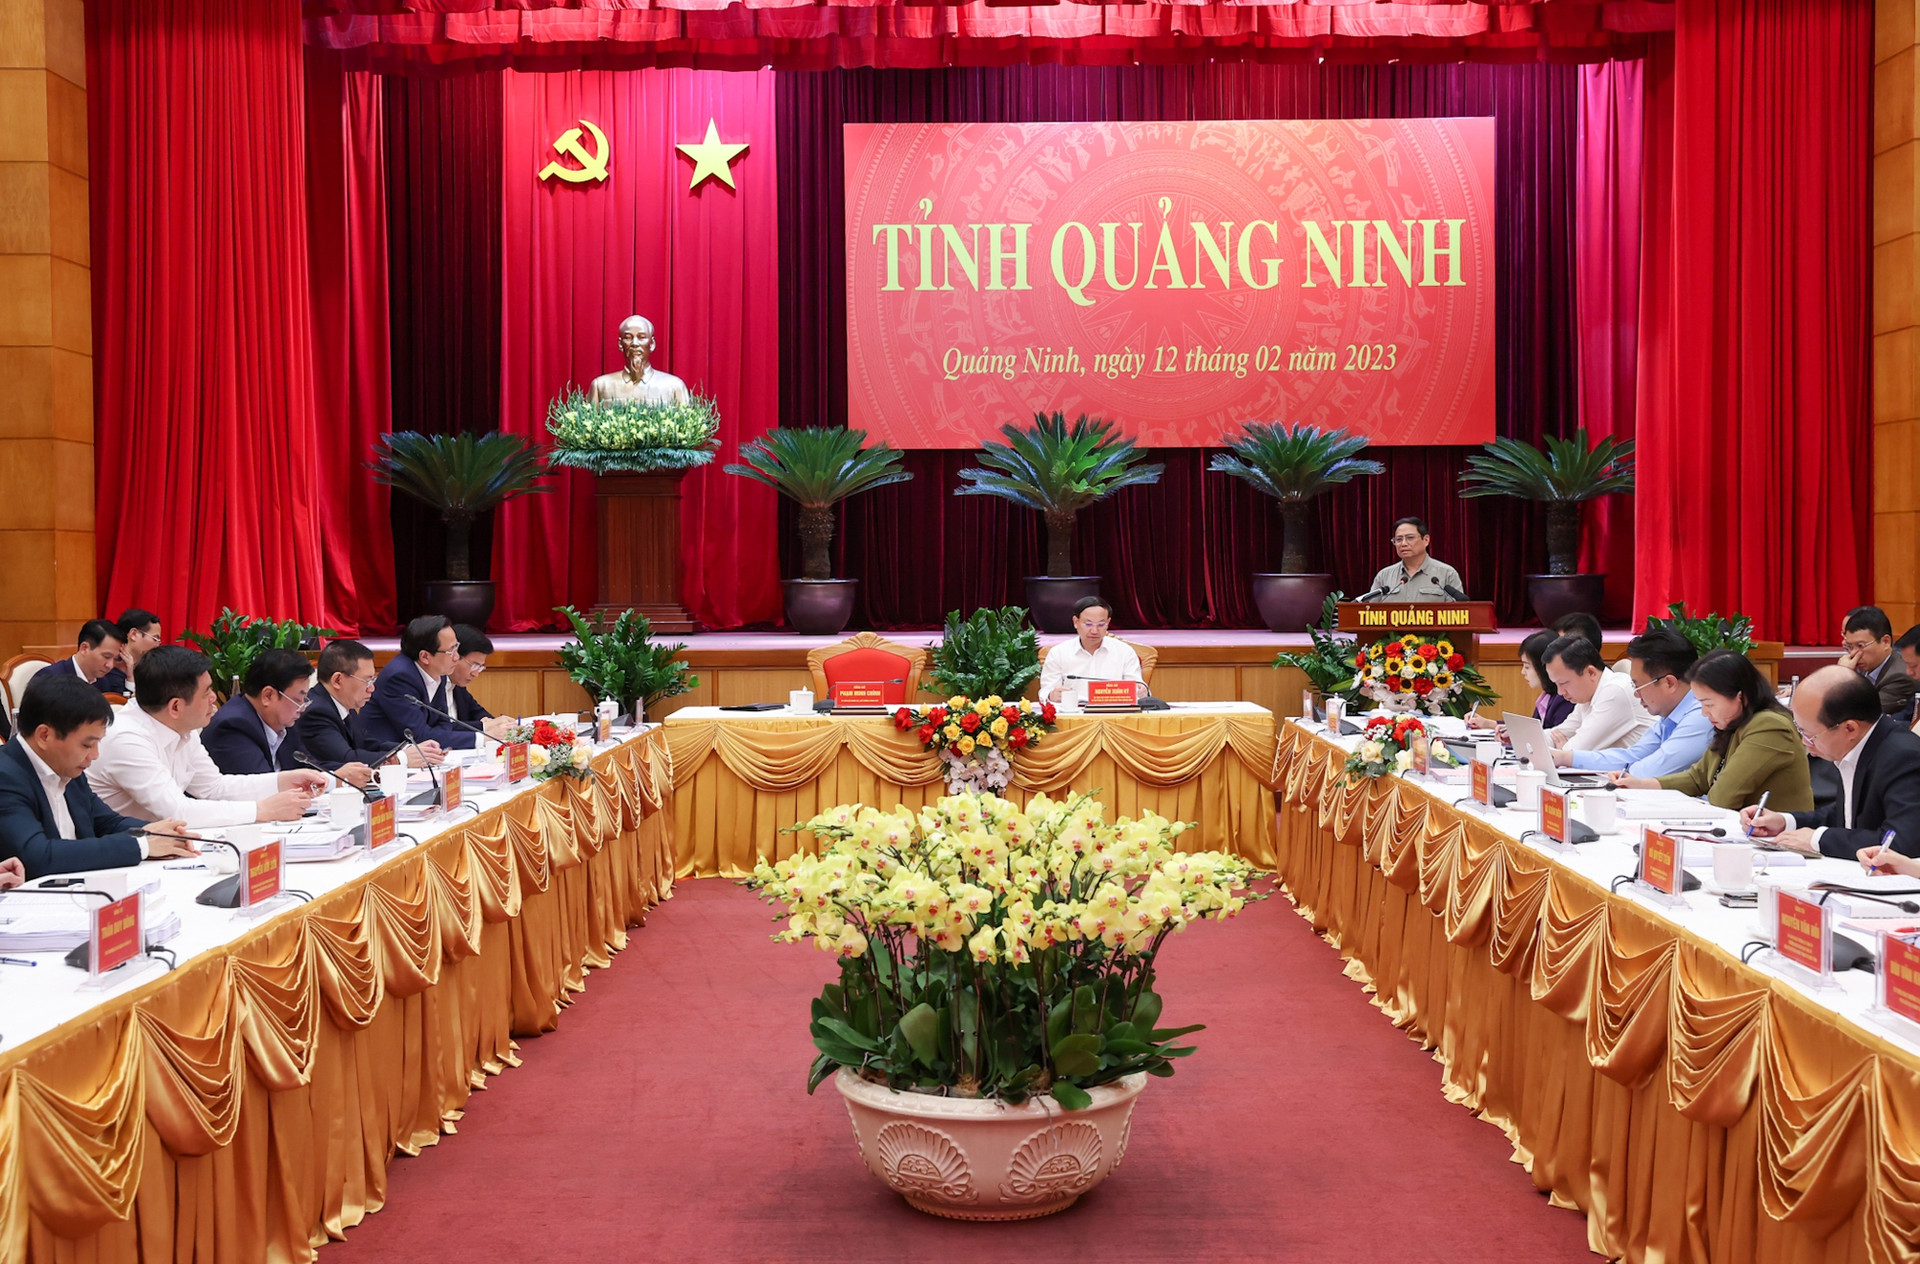 Thủ tướng: Quảng Ninh phải vươn lên tầm cao mới, phát triển giàu có và sạch đẹp - Ảnh 5.